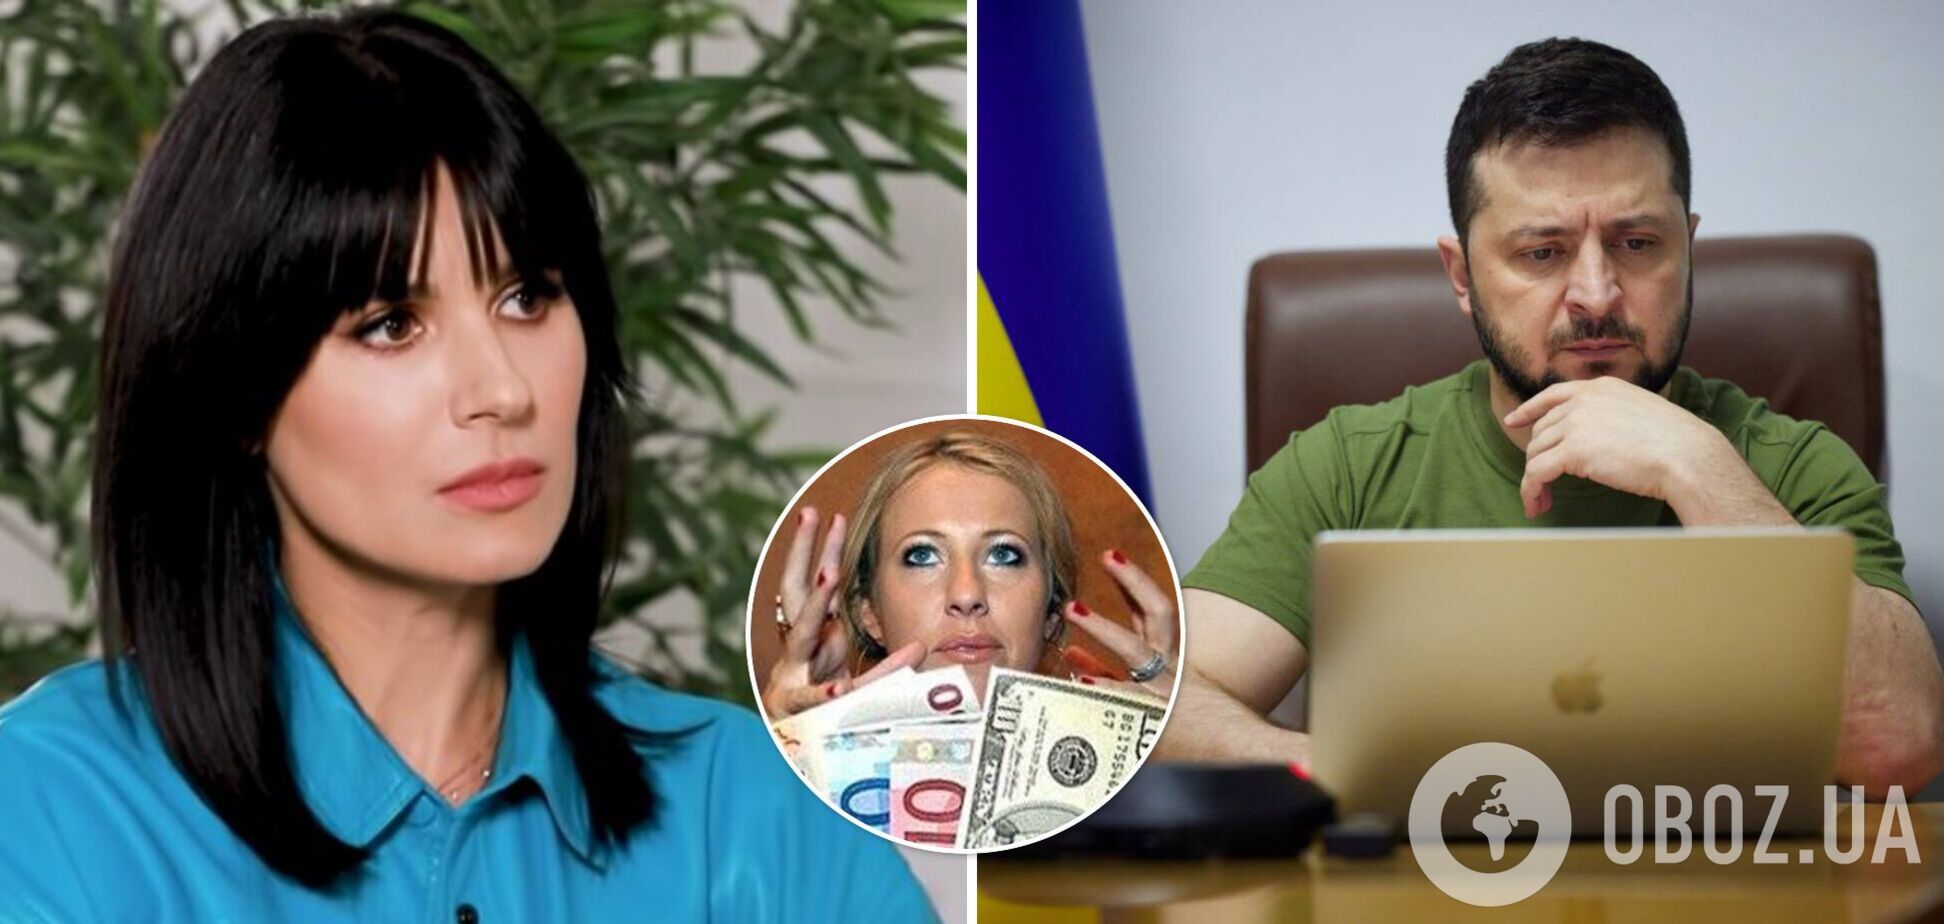 Ефросинина раскрыла инсайды 'независимой журналистки' Собчак: отказалась от интервью с Зеленским, потому что обожает деньги